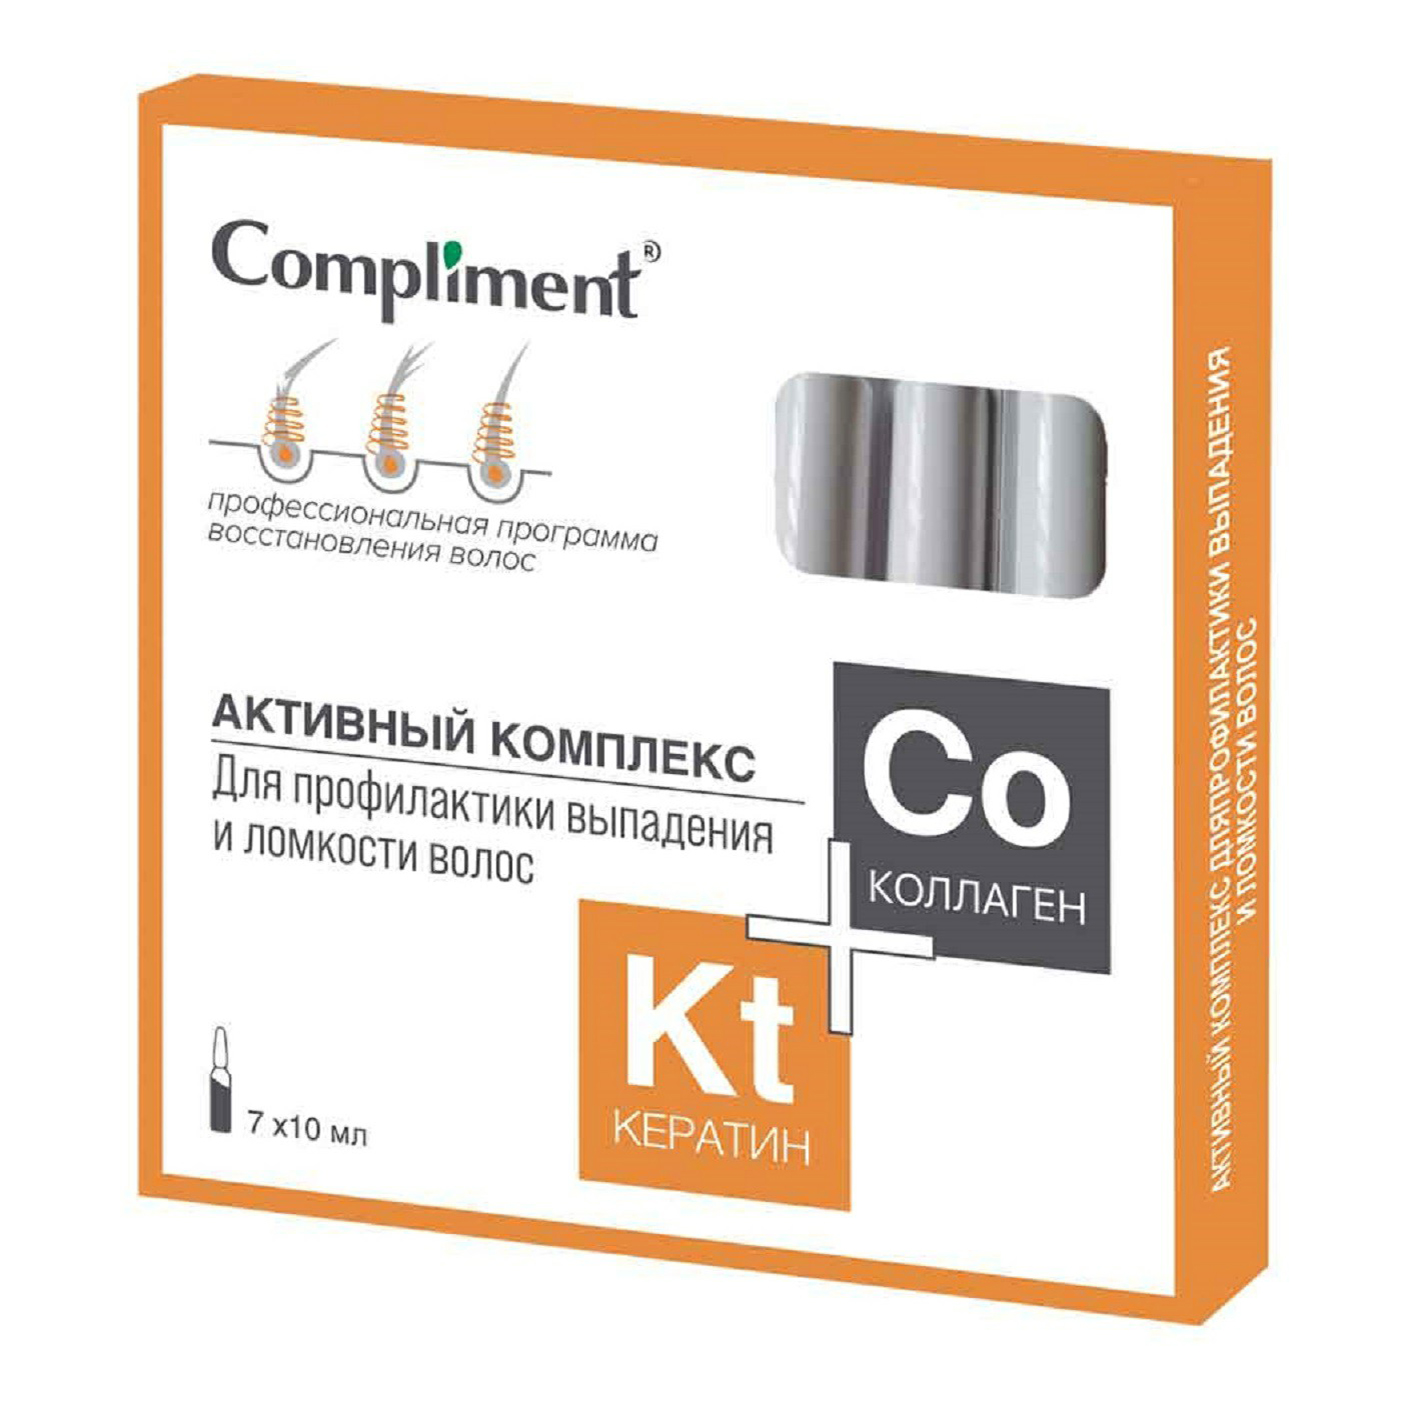 фото Комплекс compliment кератин+коллаген для профилактики выпадения ломкости волос 10 млх7 шт.